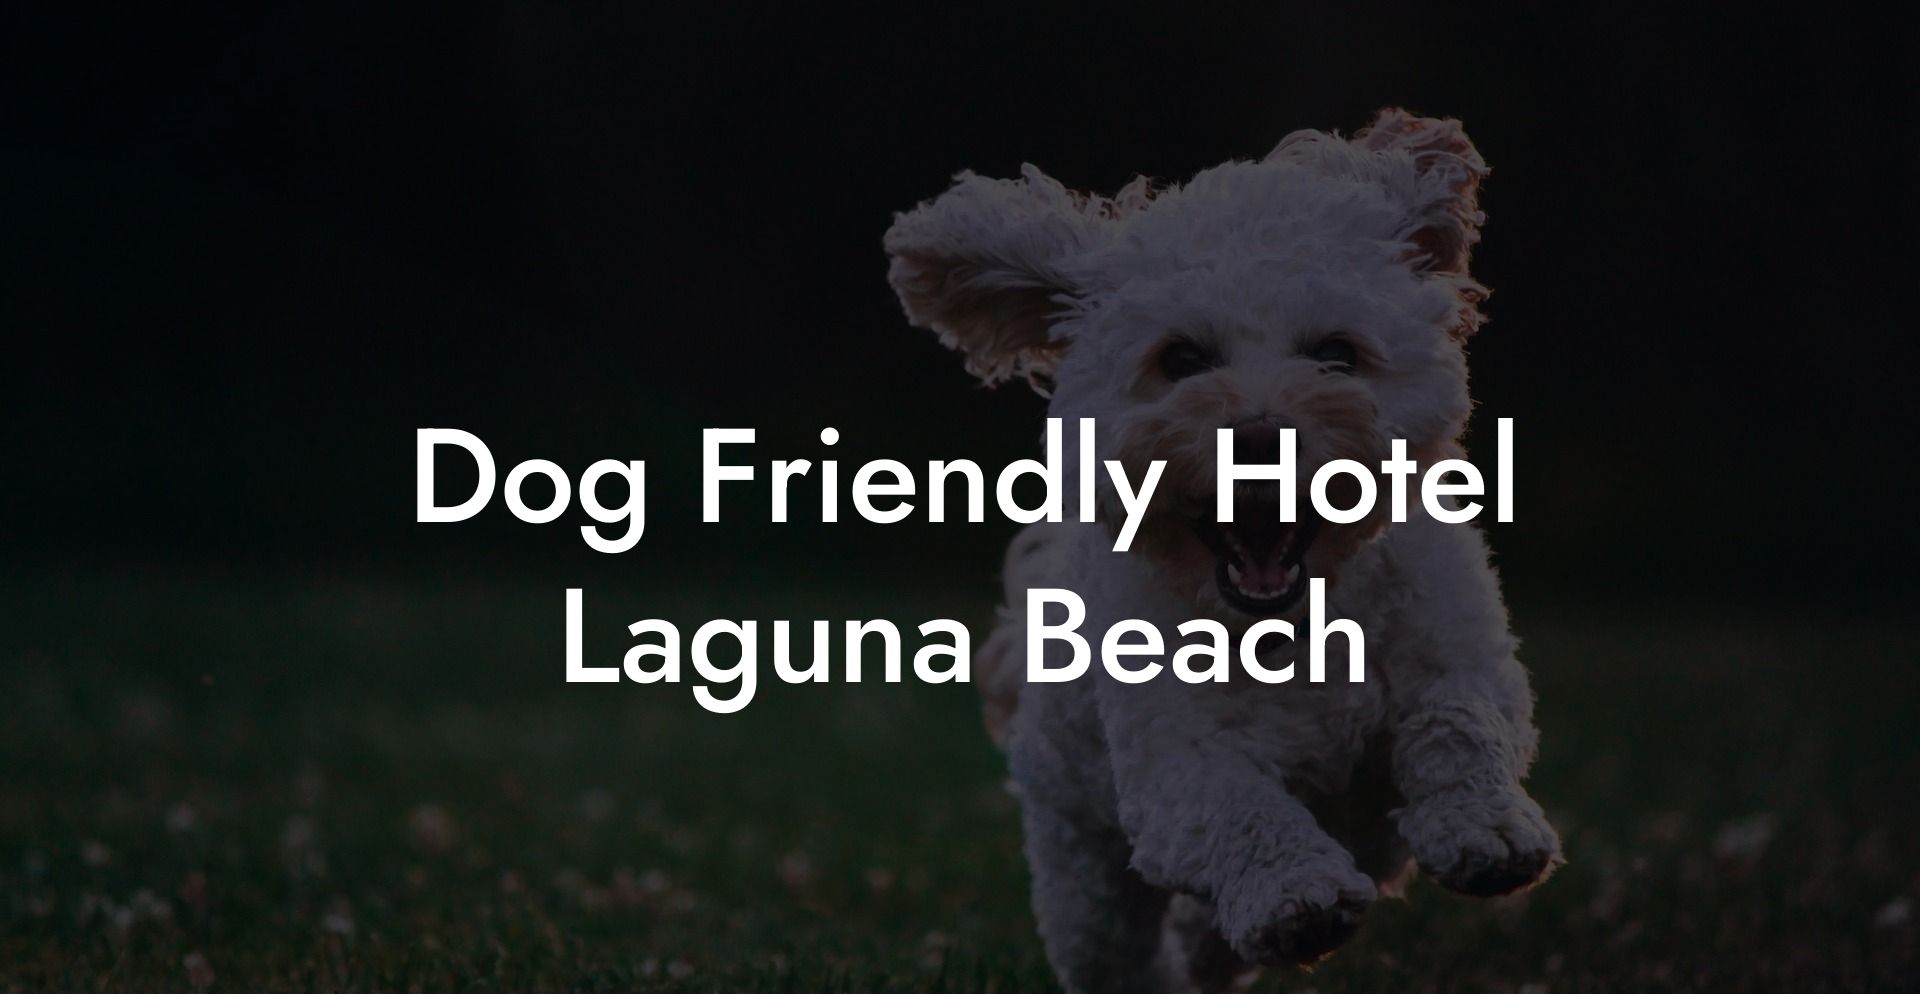 Dog Friendly Hotel Laguna Beach